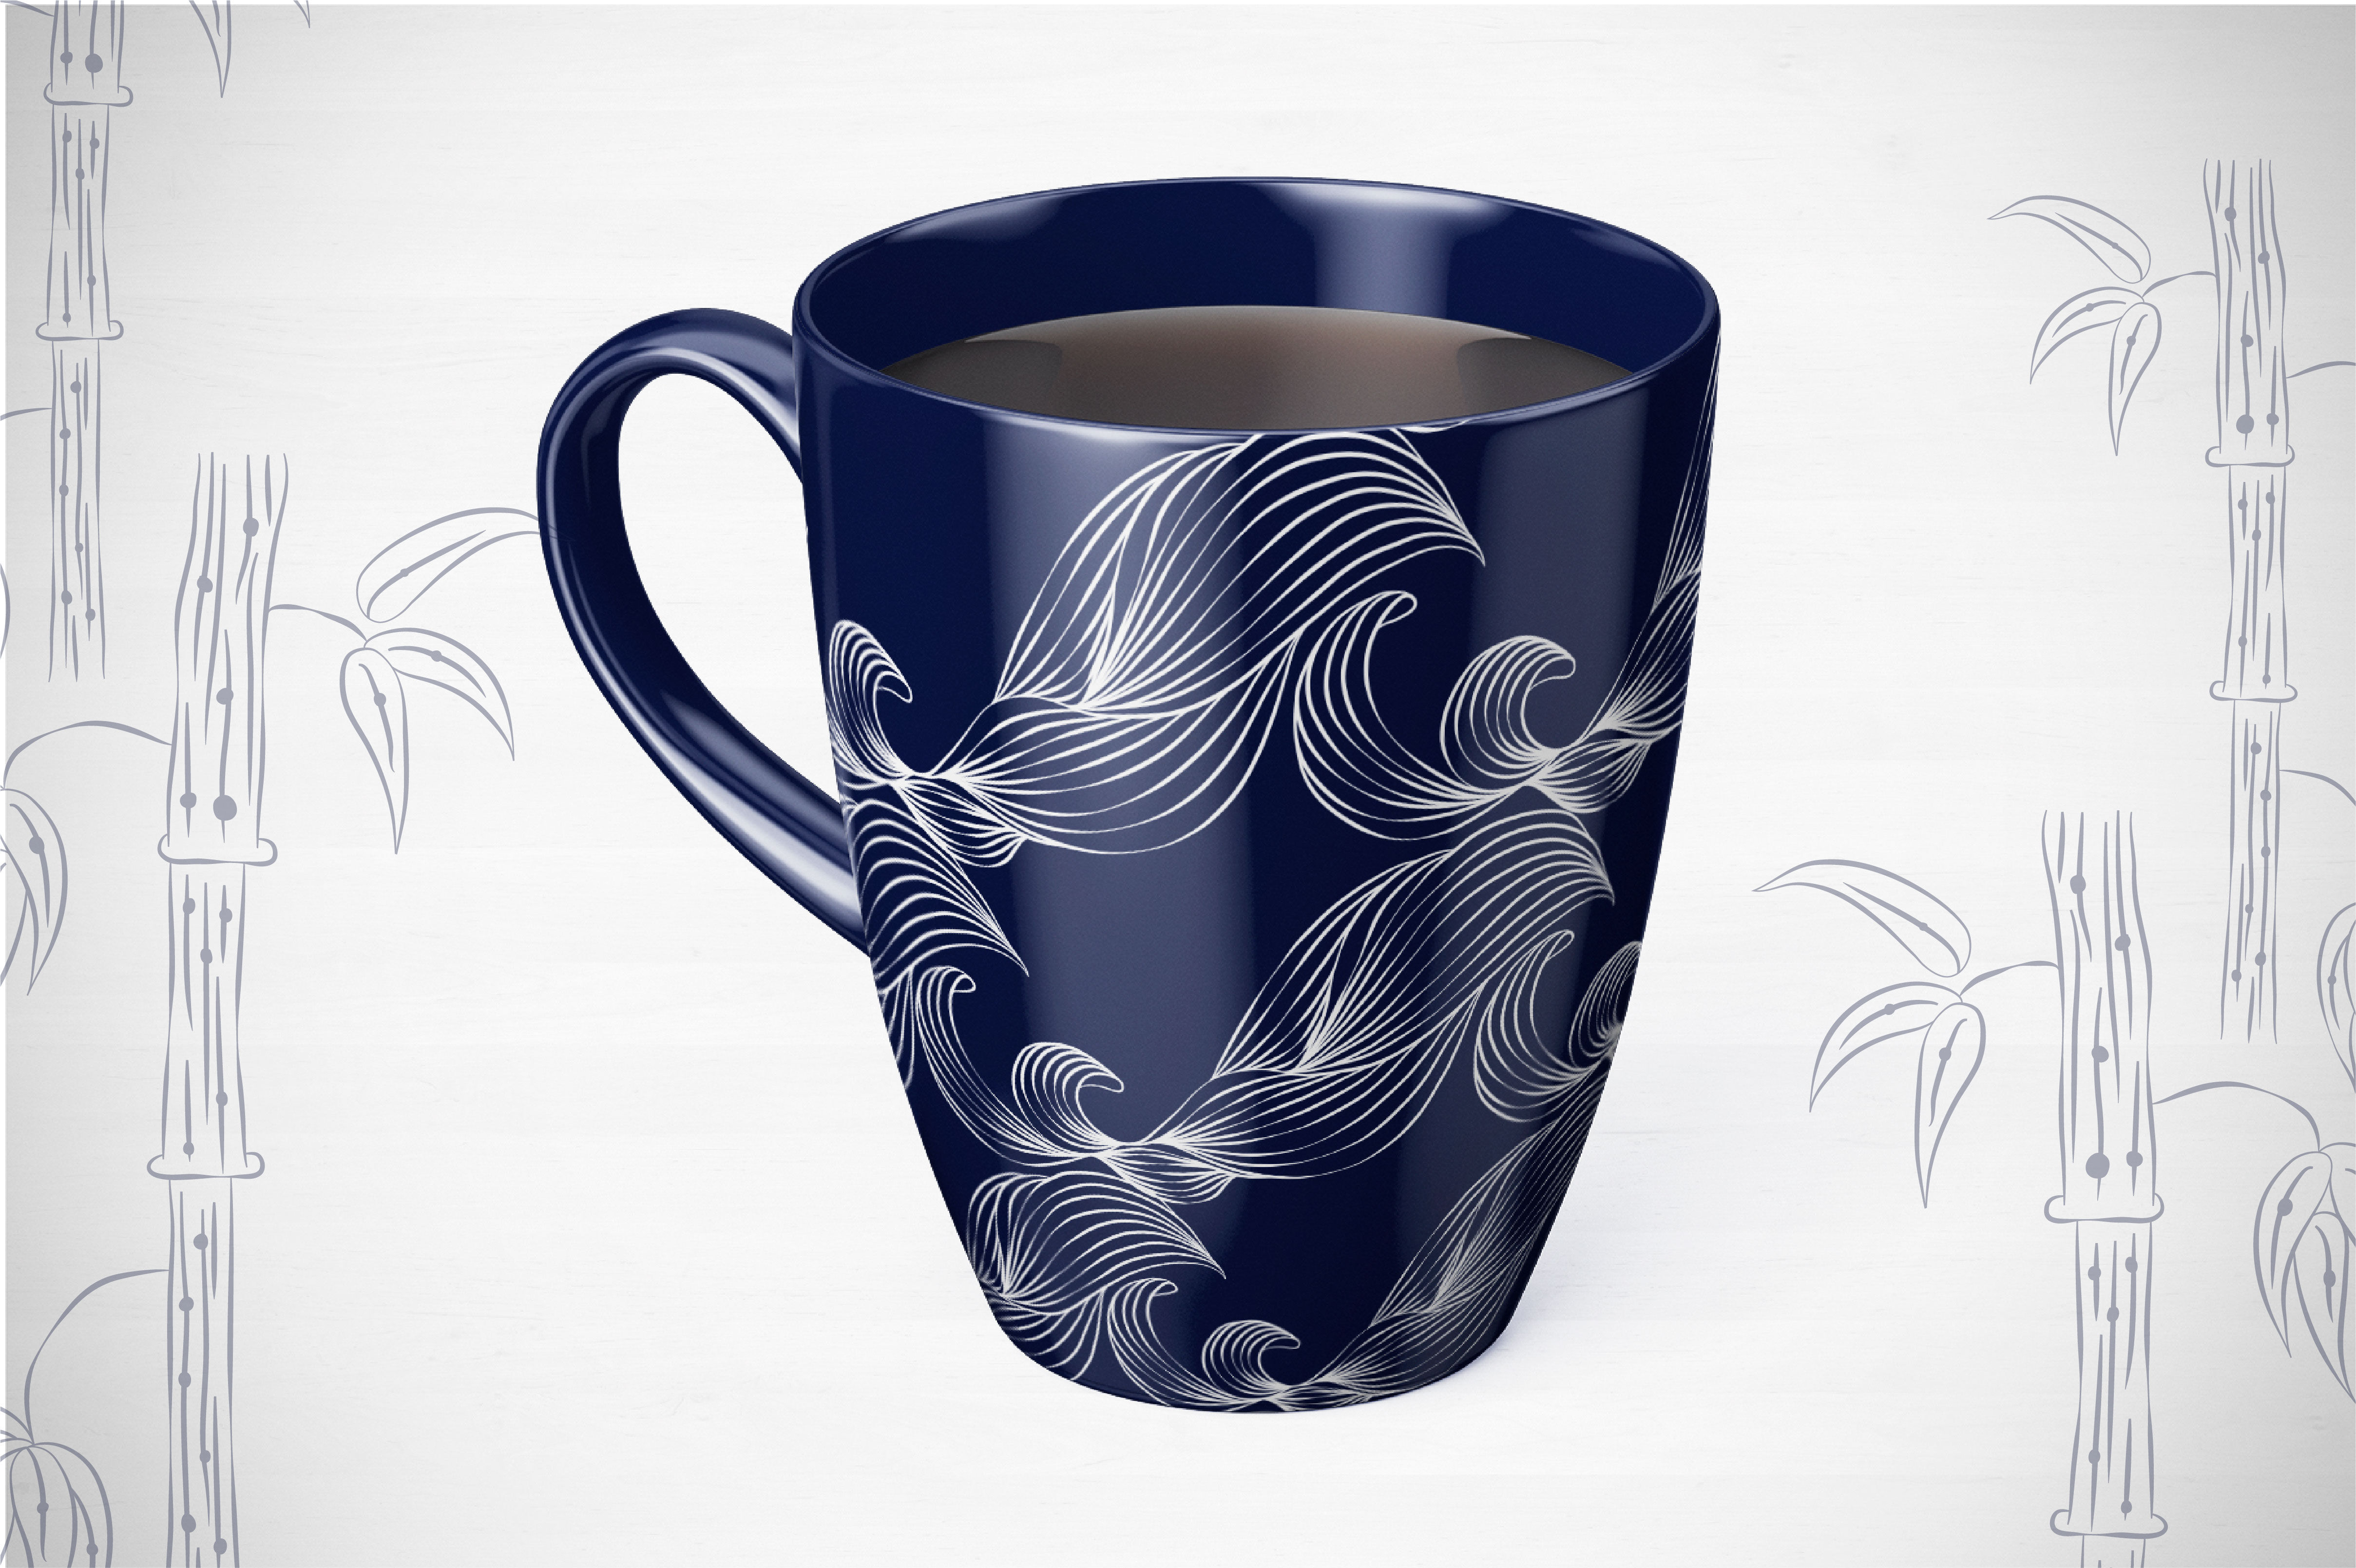 Download Cranberry Bubble Tea Cup Mockup - Free Mockups | PSD ...